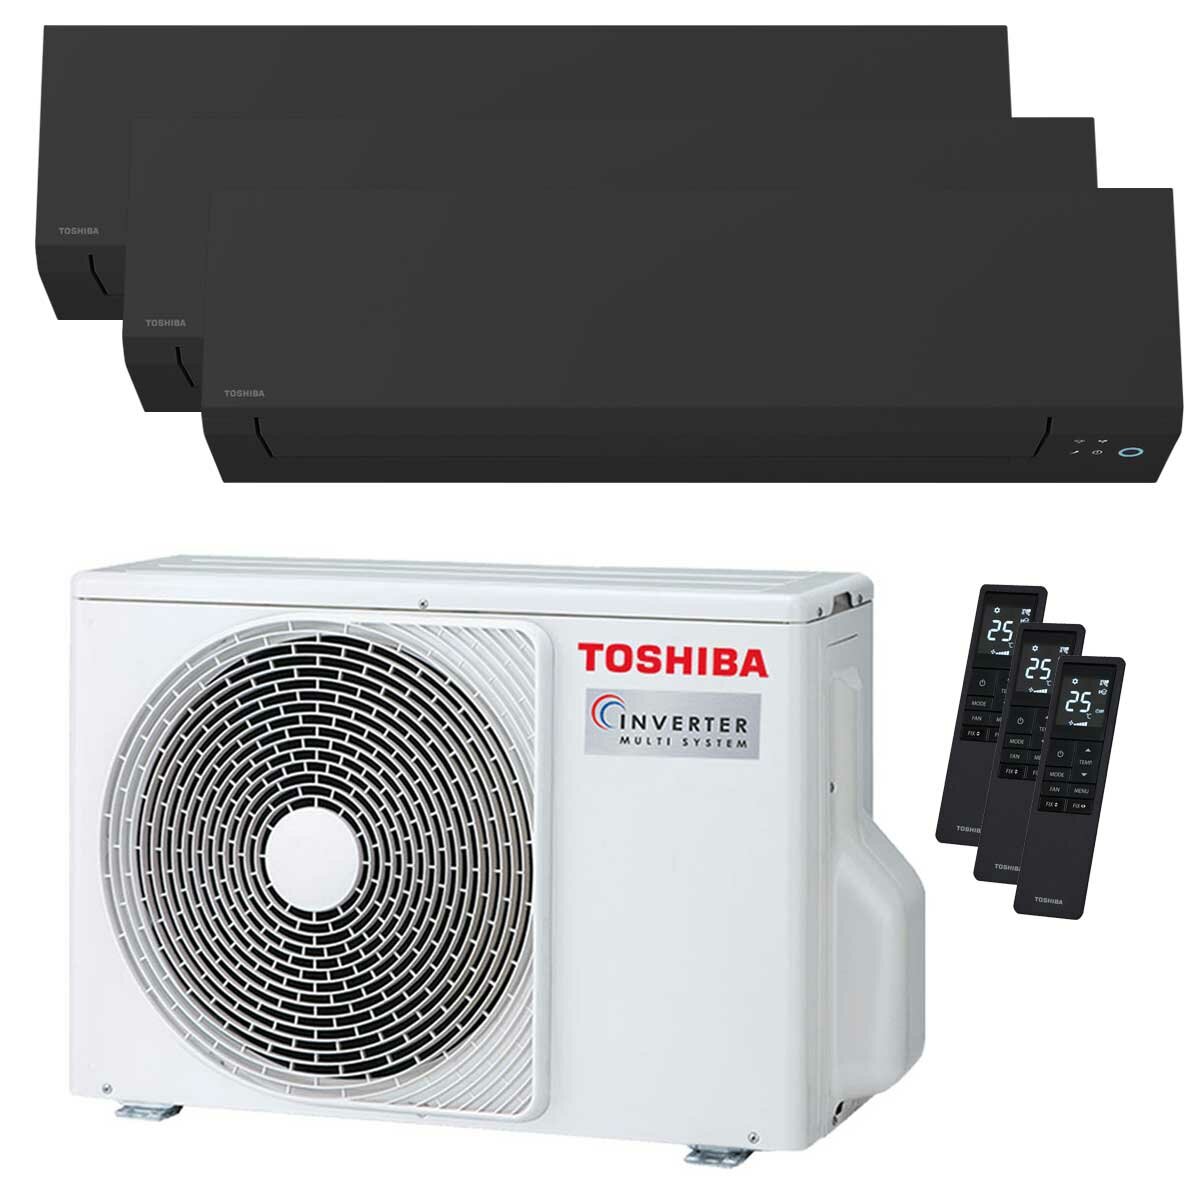 Climatiseur trial split Toshiba SHORAI Edge Black 7000+7000+16000 BTU inverseur A+++ unité extérieure wifi 5,2 kW 